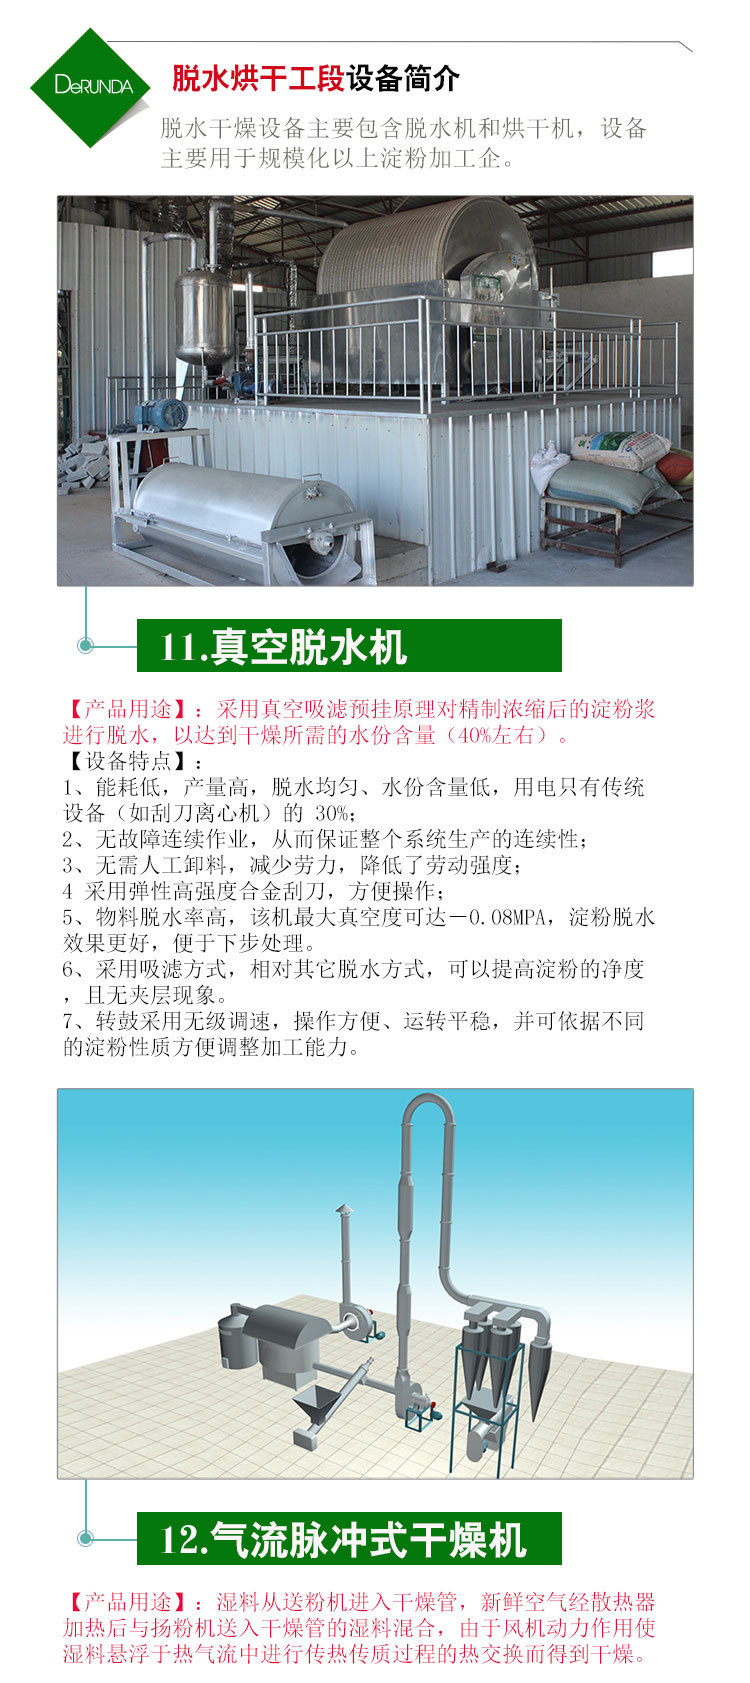 【固德威】标准型马铃薯淀粉设备 大型加工生产线 12-100吨/日示例图13